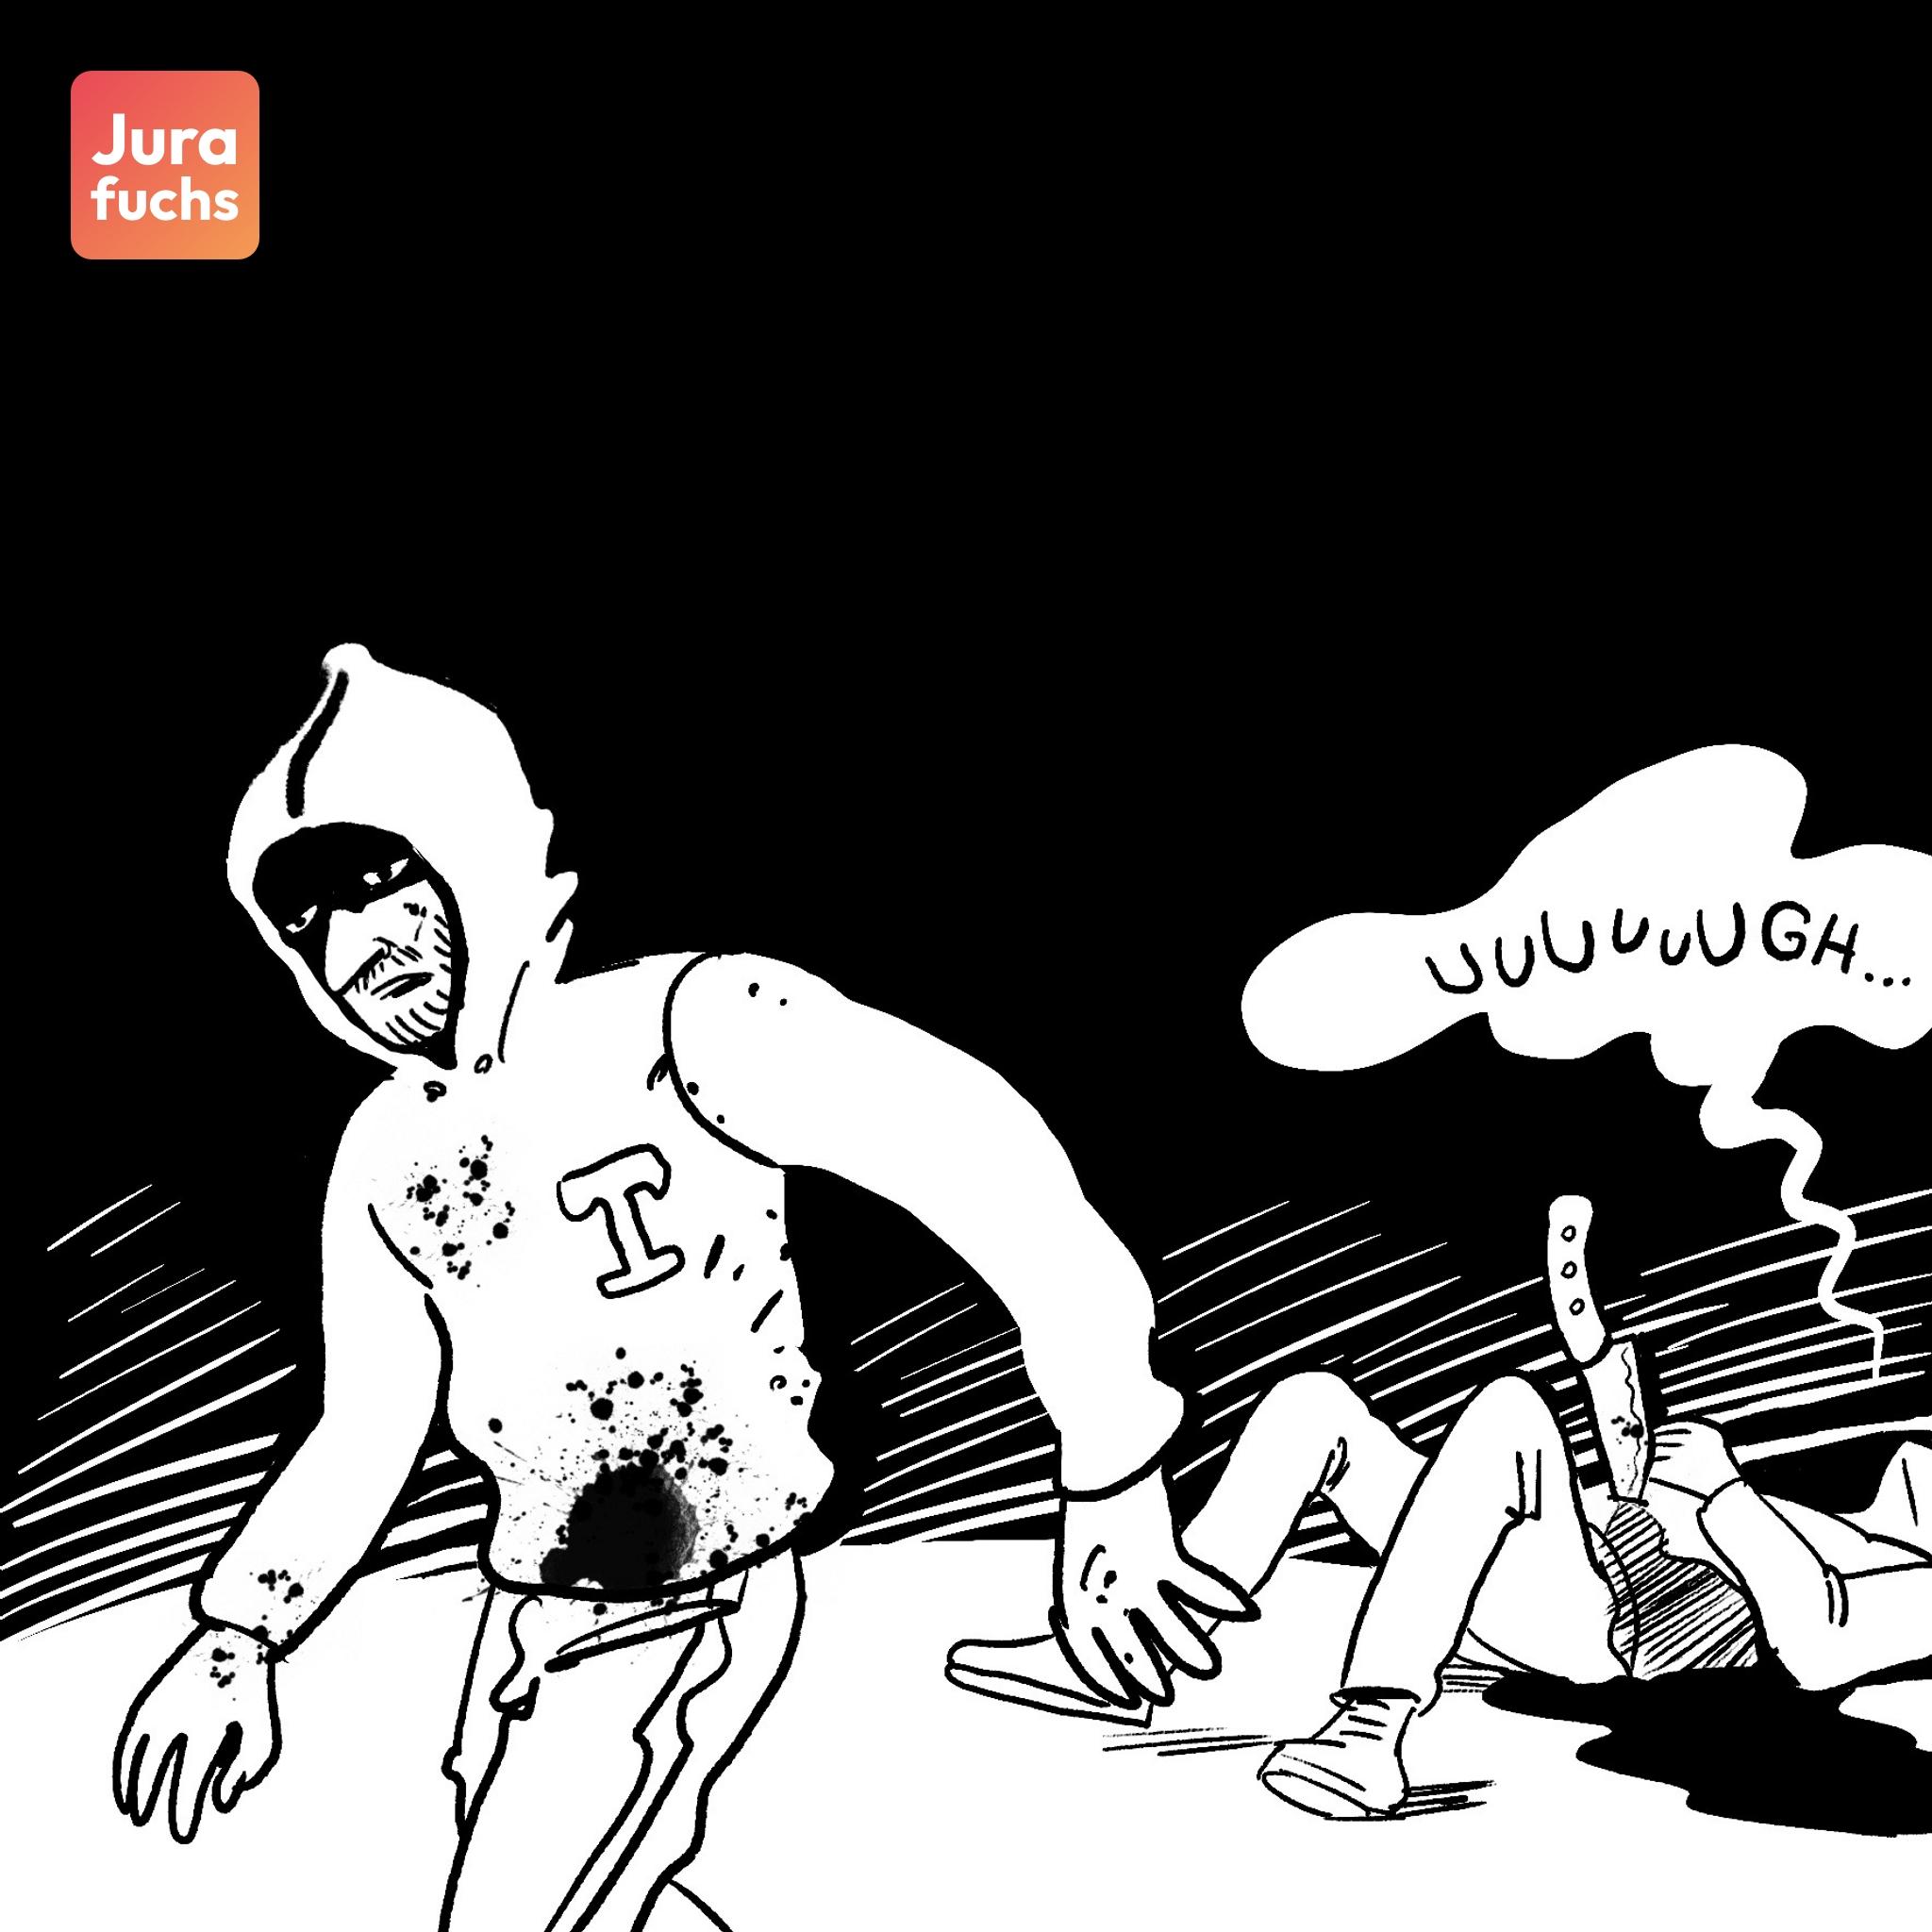 Jurafuchs Illustration: T läuft blutverschmiert von seinem auf dem Boden liegenden Opfer weg. 